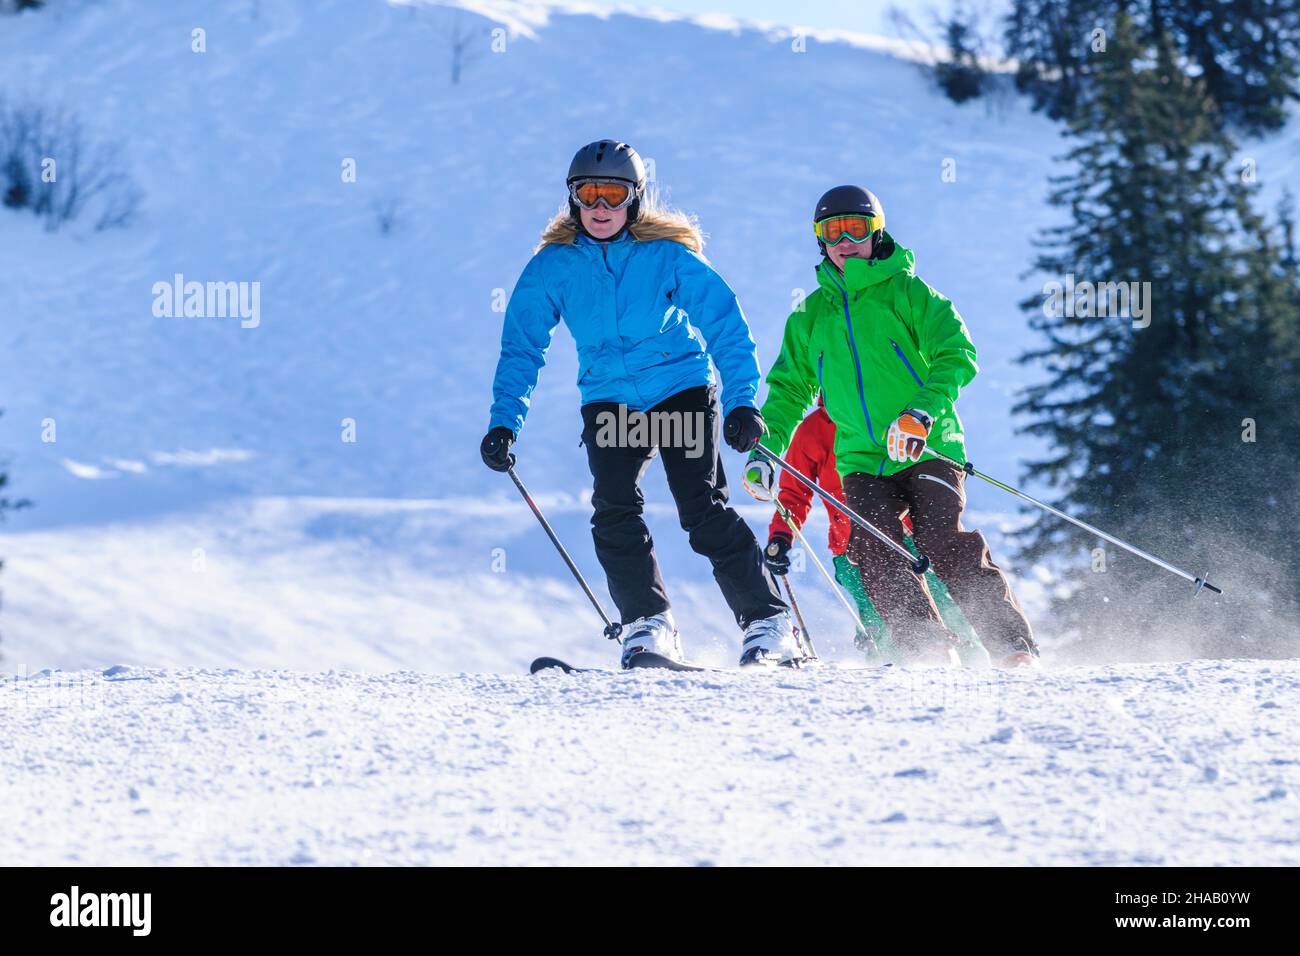 Les jeunes skient ensemble sur une pente bien préparée Banque D'Images